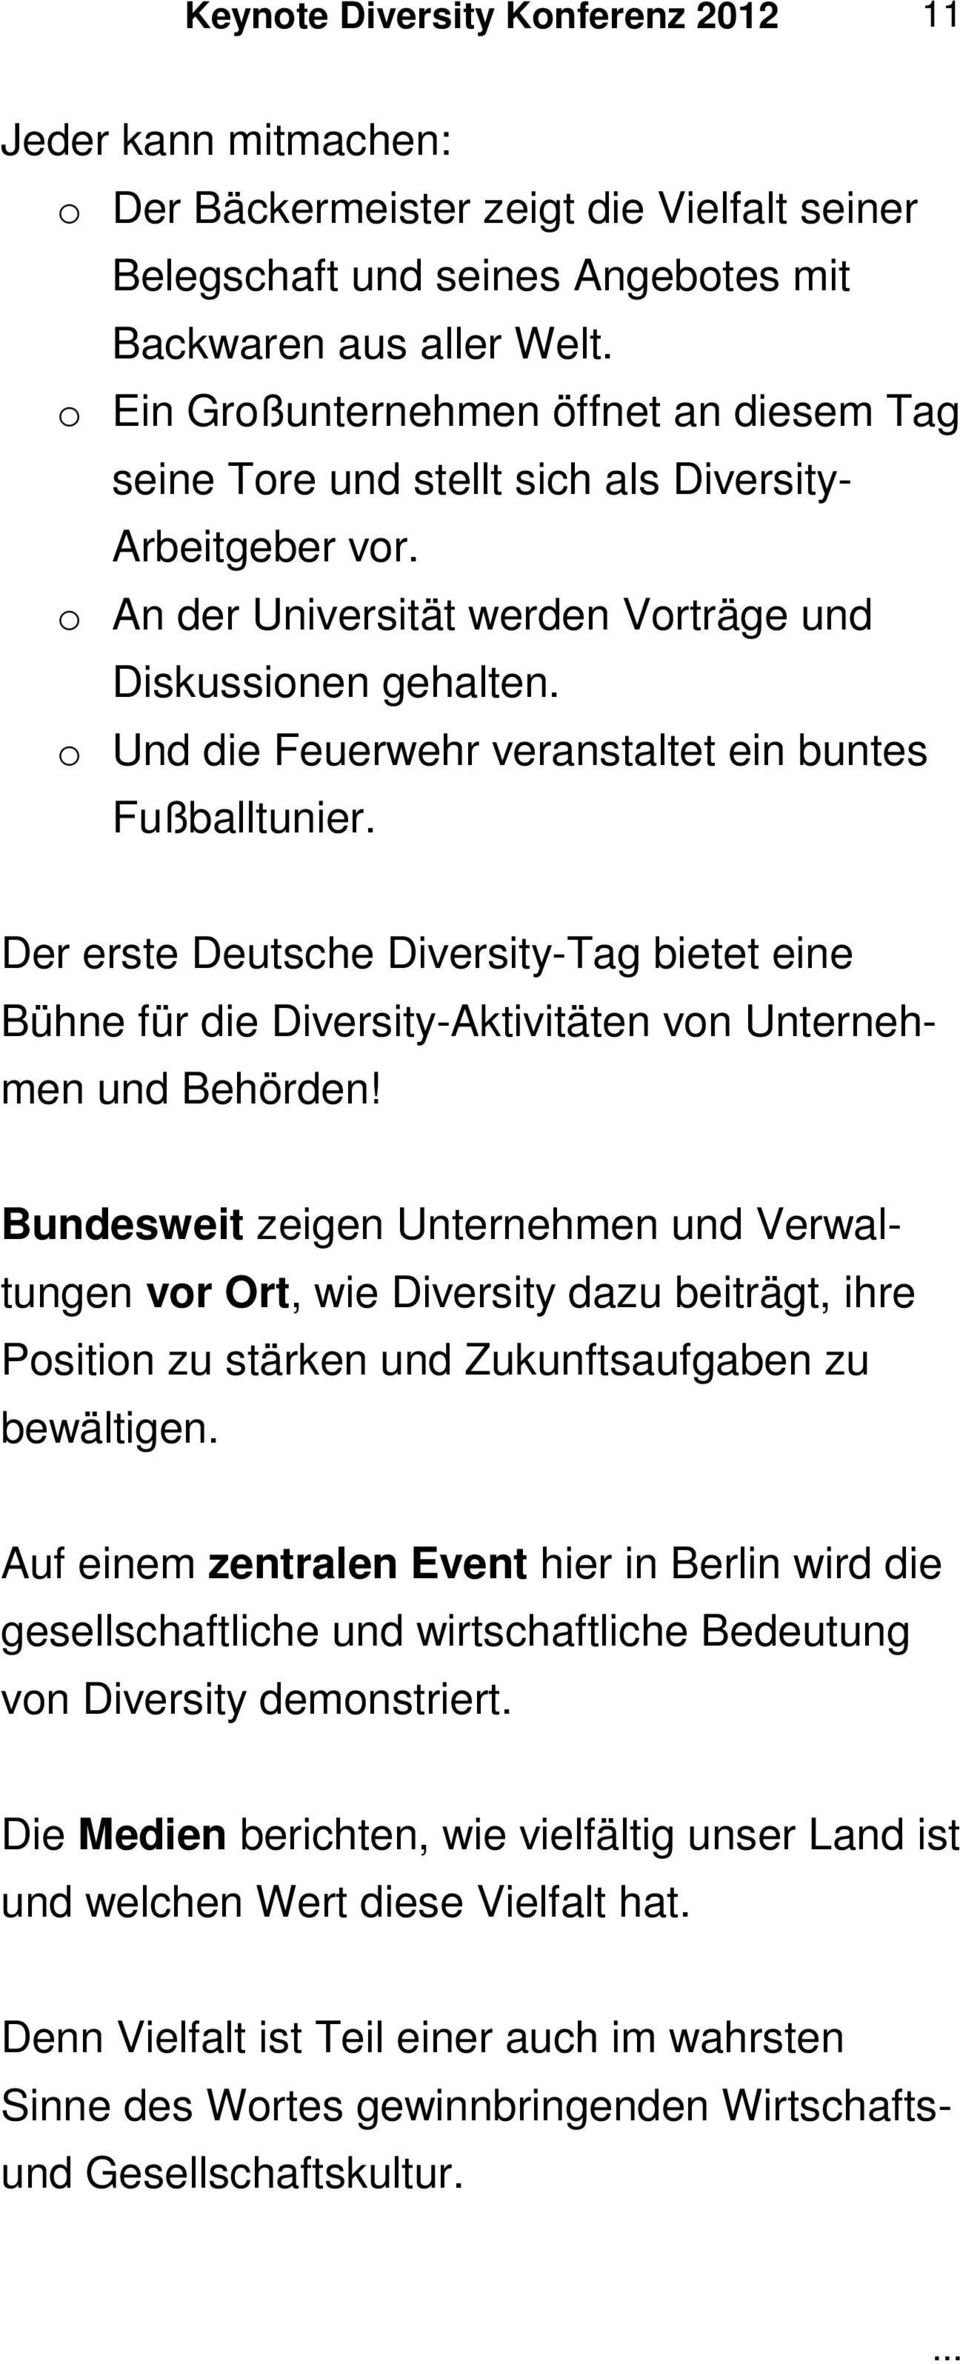 o Und die Feuerwehr veranstaltet ein buntes Fußballtunier. Der erste Deutsche Diversity-Tag bietet eine Bühne für die Diversity-Aktivitäten von Unternehmen und Behörden!